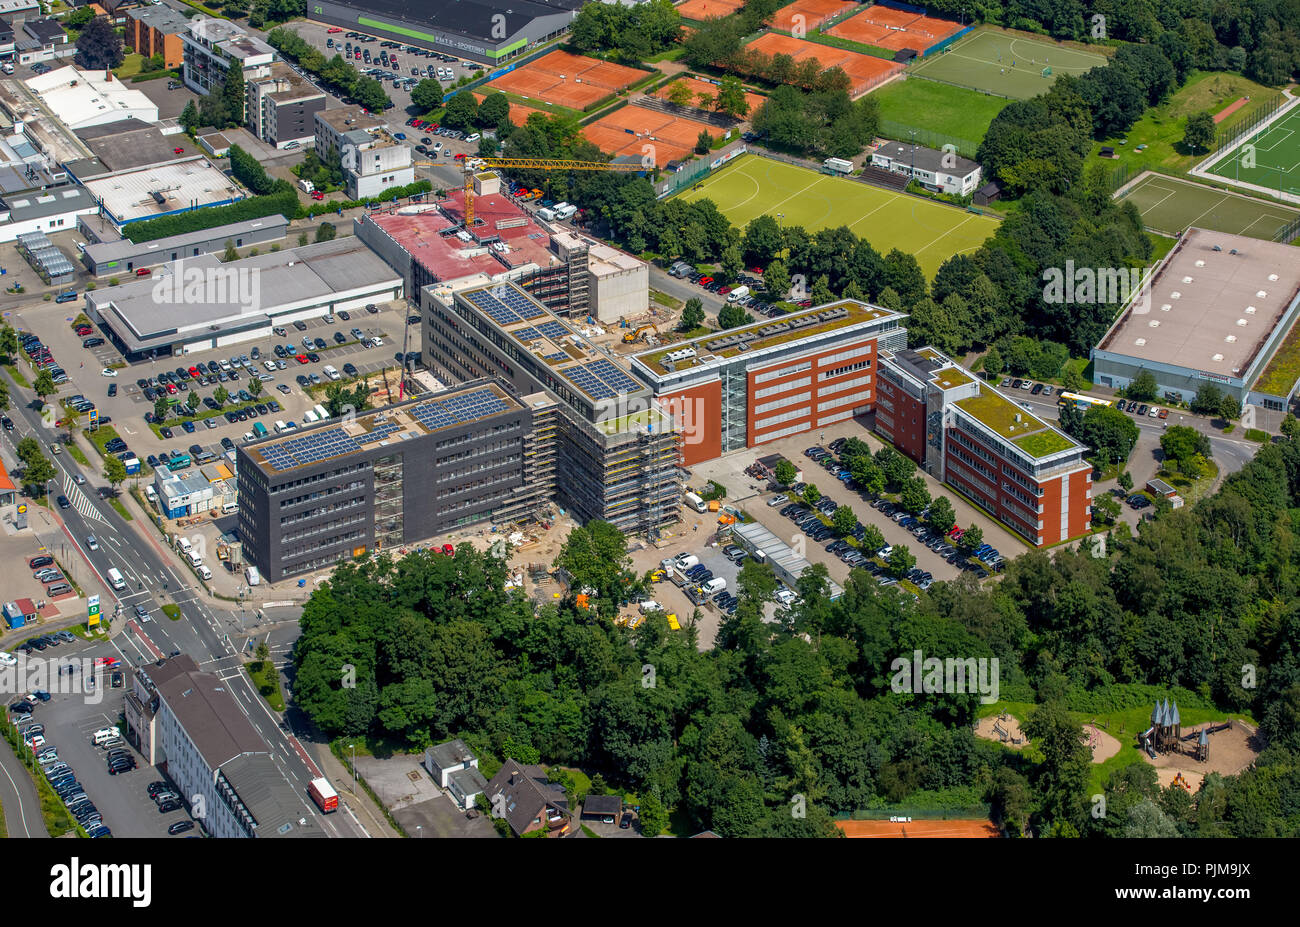 Neues Büro Komplex von aldi-süd an der Mintarder Straße, Mülheim an der Ruhr,  Ruhrgebiet, Nordrhein-Westfalen, Deutschland Stockfotografie - Alamy